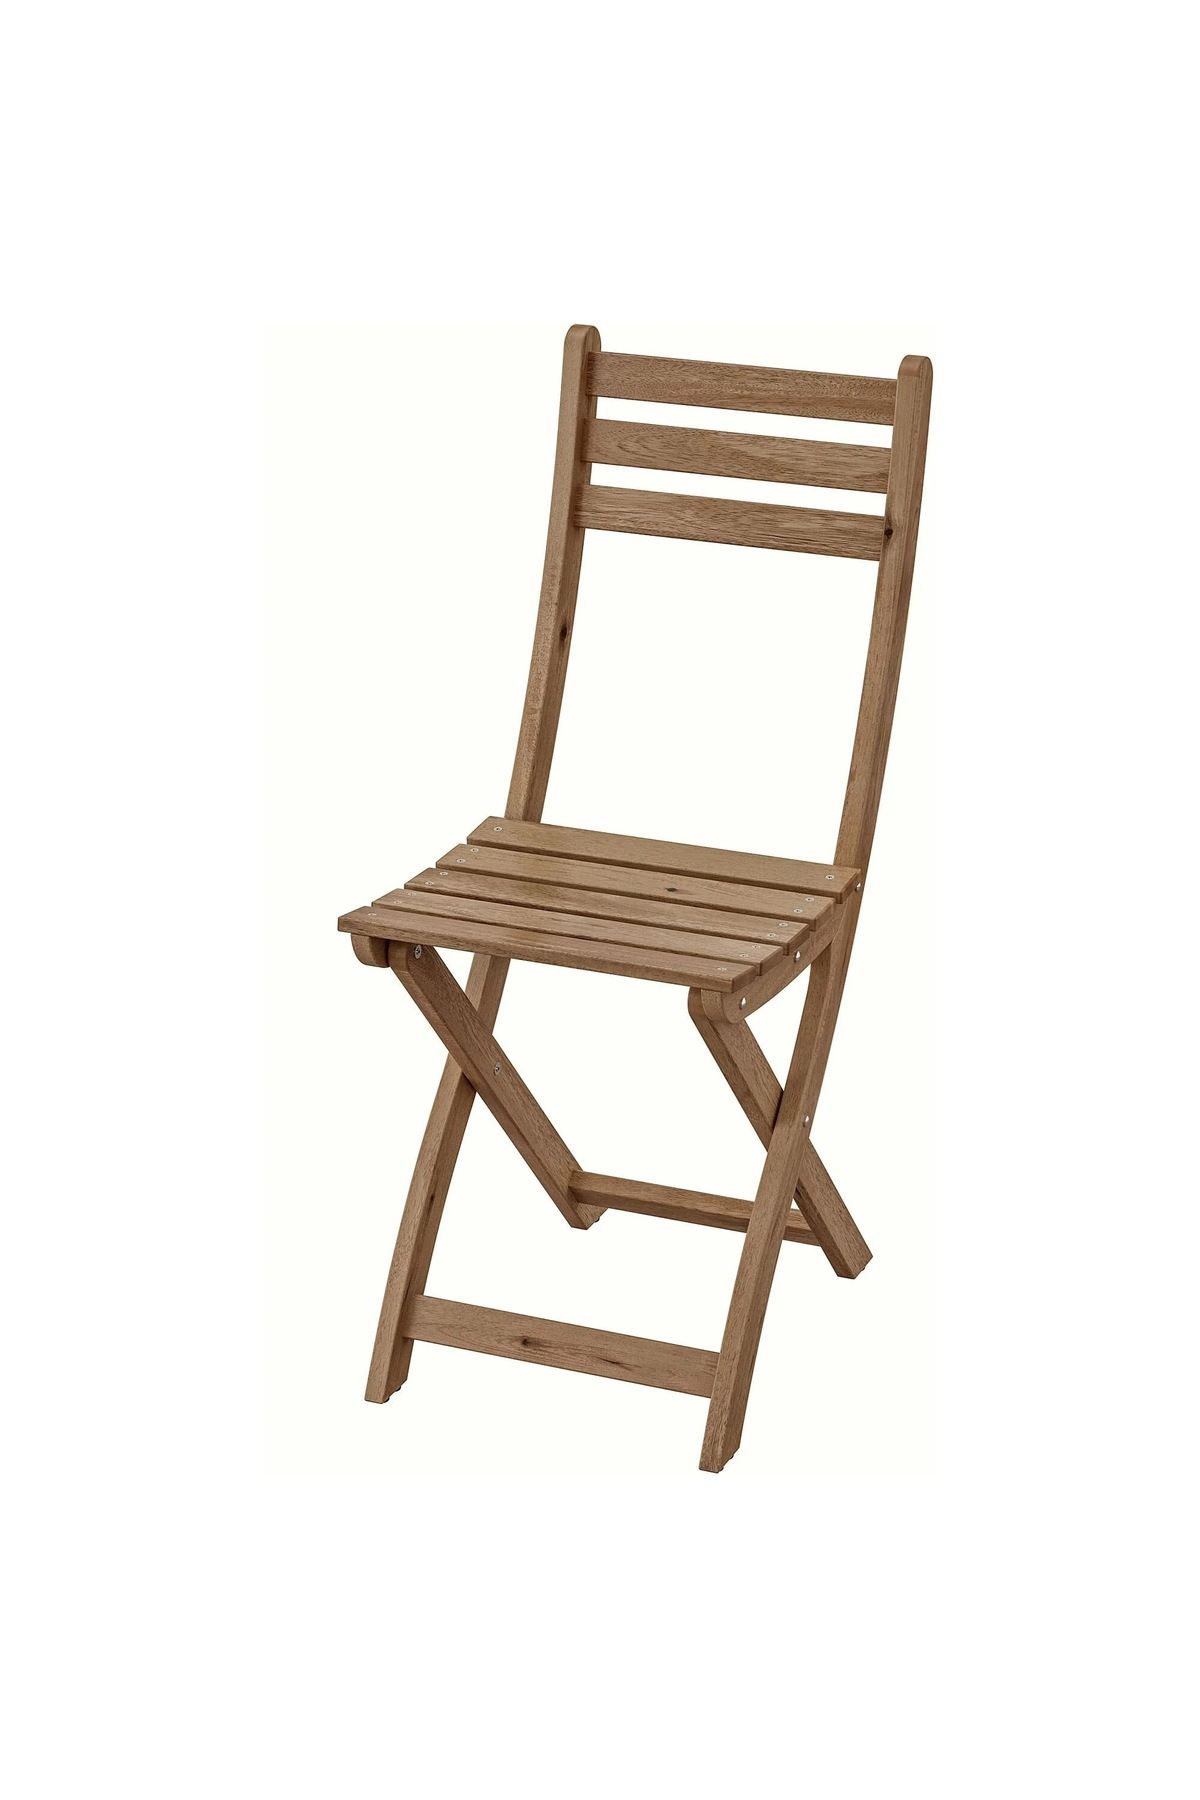 IKEA Askholmen Açık Kahverengi Katlanabilir Sandalye Mindersiz